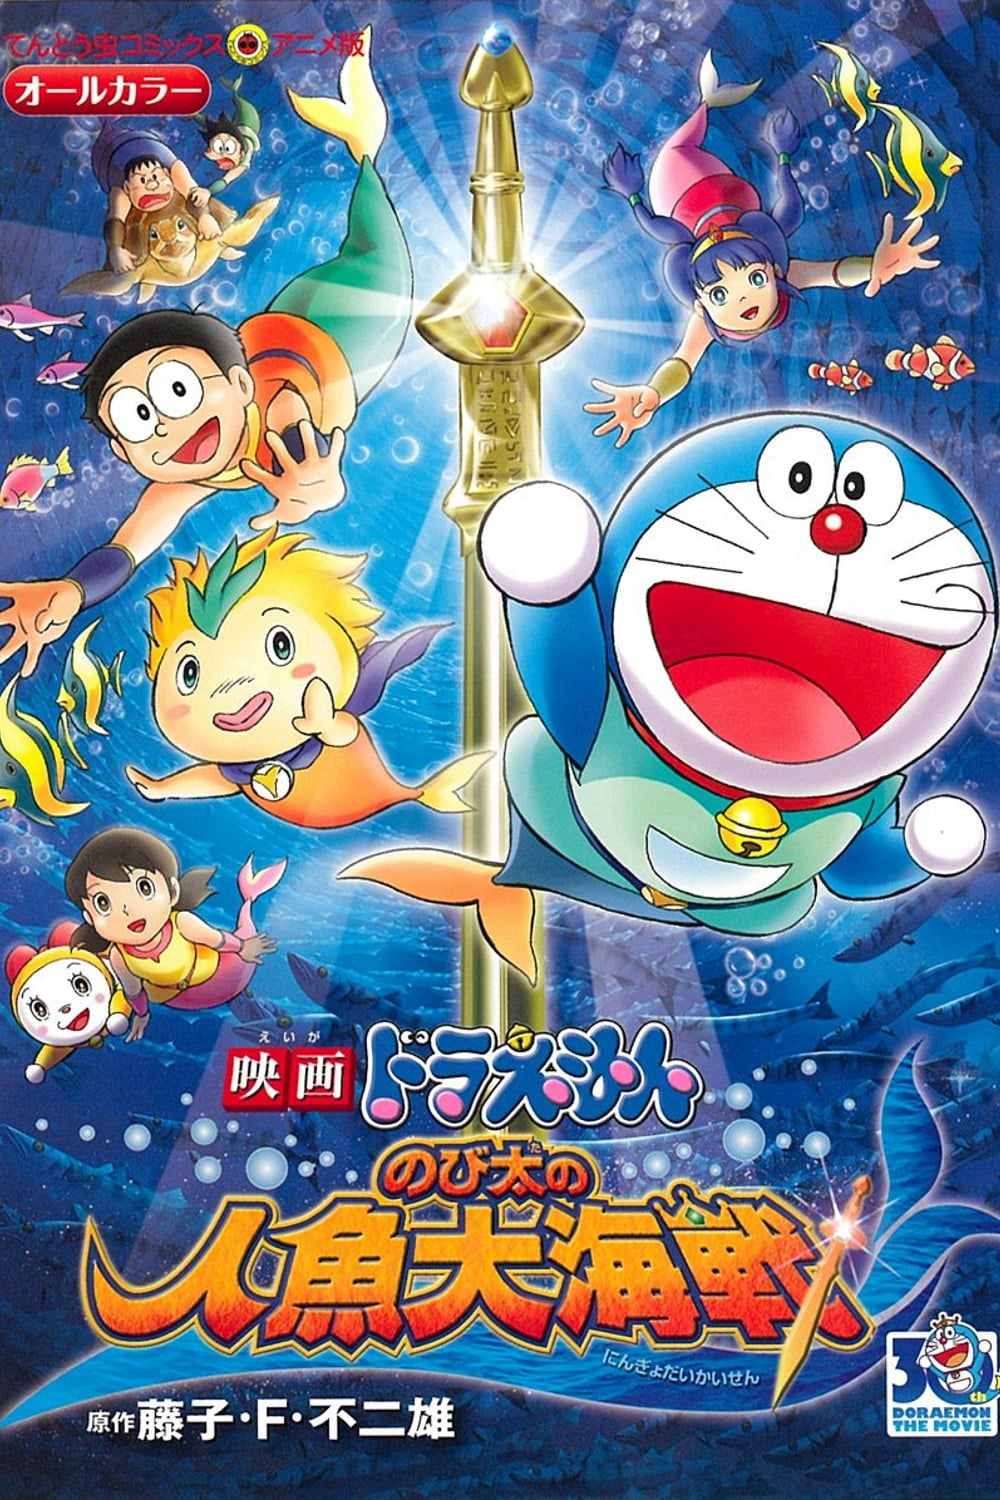 Xem Phim Doraemon: Nobita và Cuộc Đại Thủy Chiến Ở Xứ Sở Người Cá (Doraemon the Movie: Nobita's Mermaid Legend)